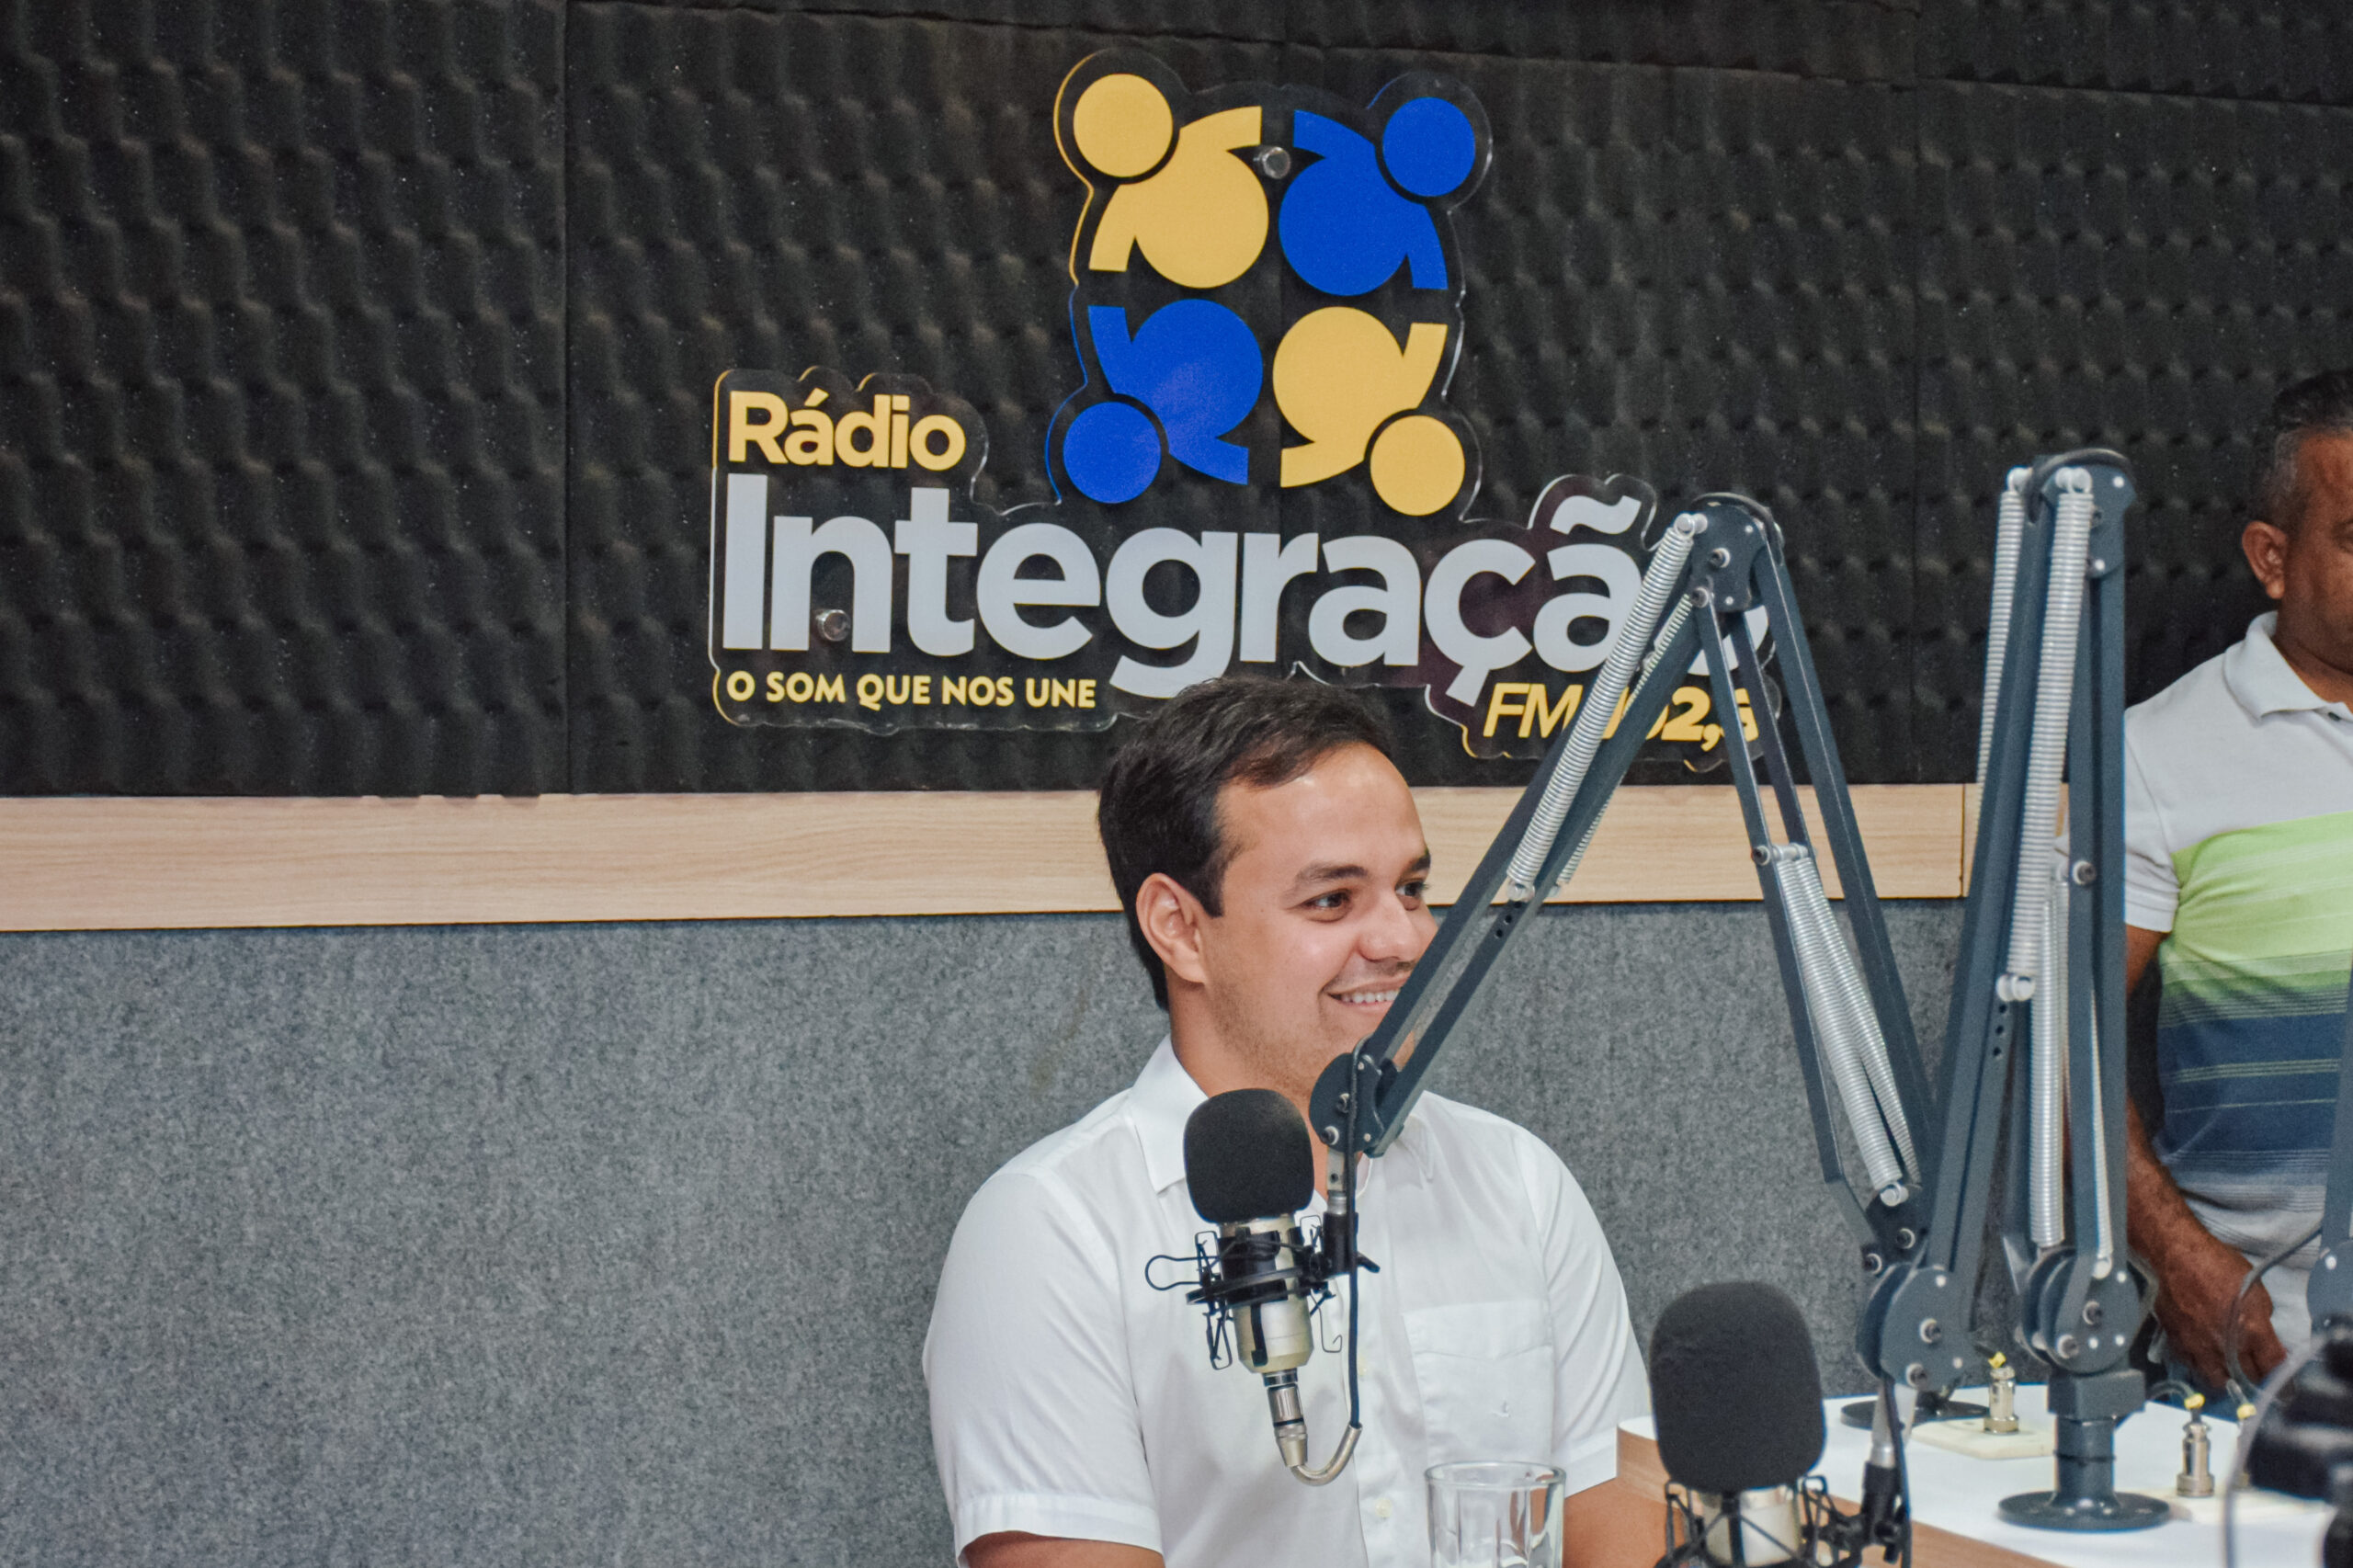 Prefeito Matheus Bezerra fala sobre o São João e perspectivas de gestão na Rádio Integração